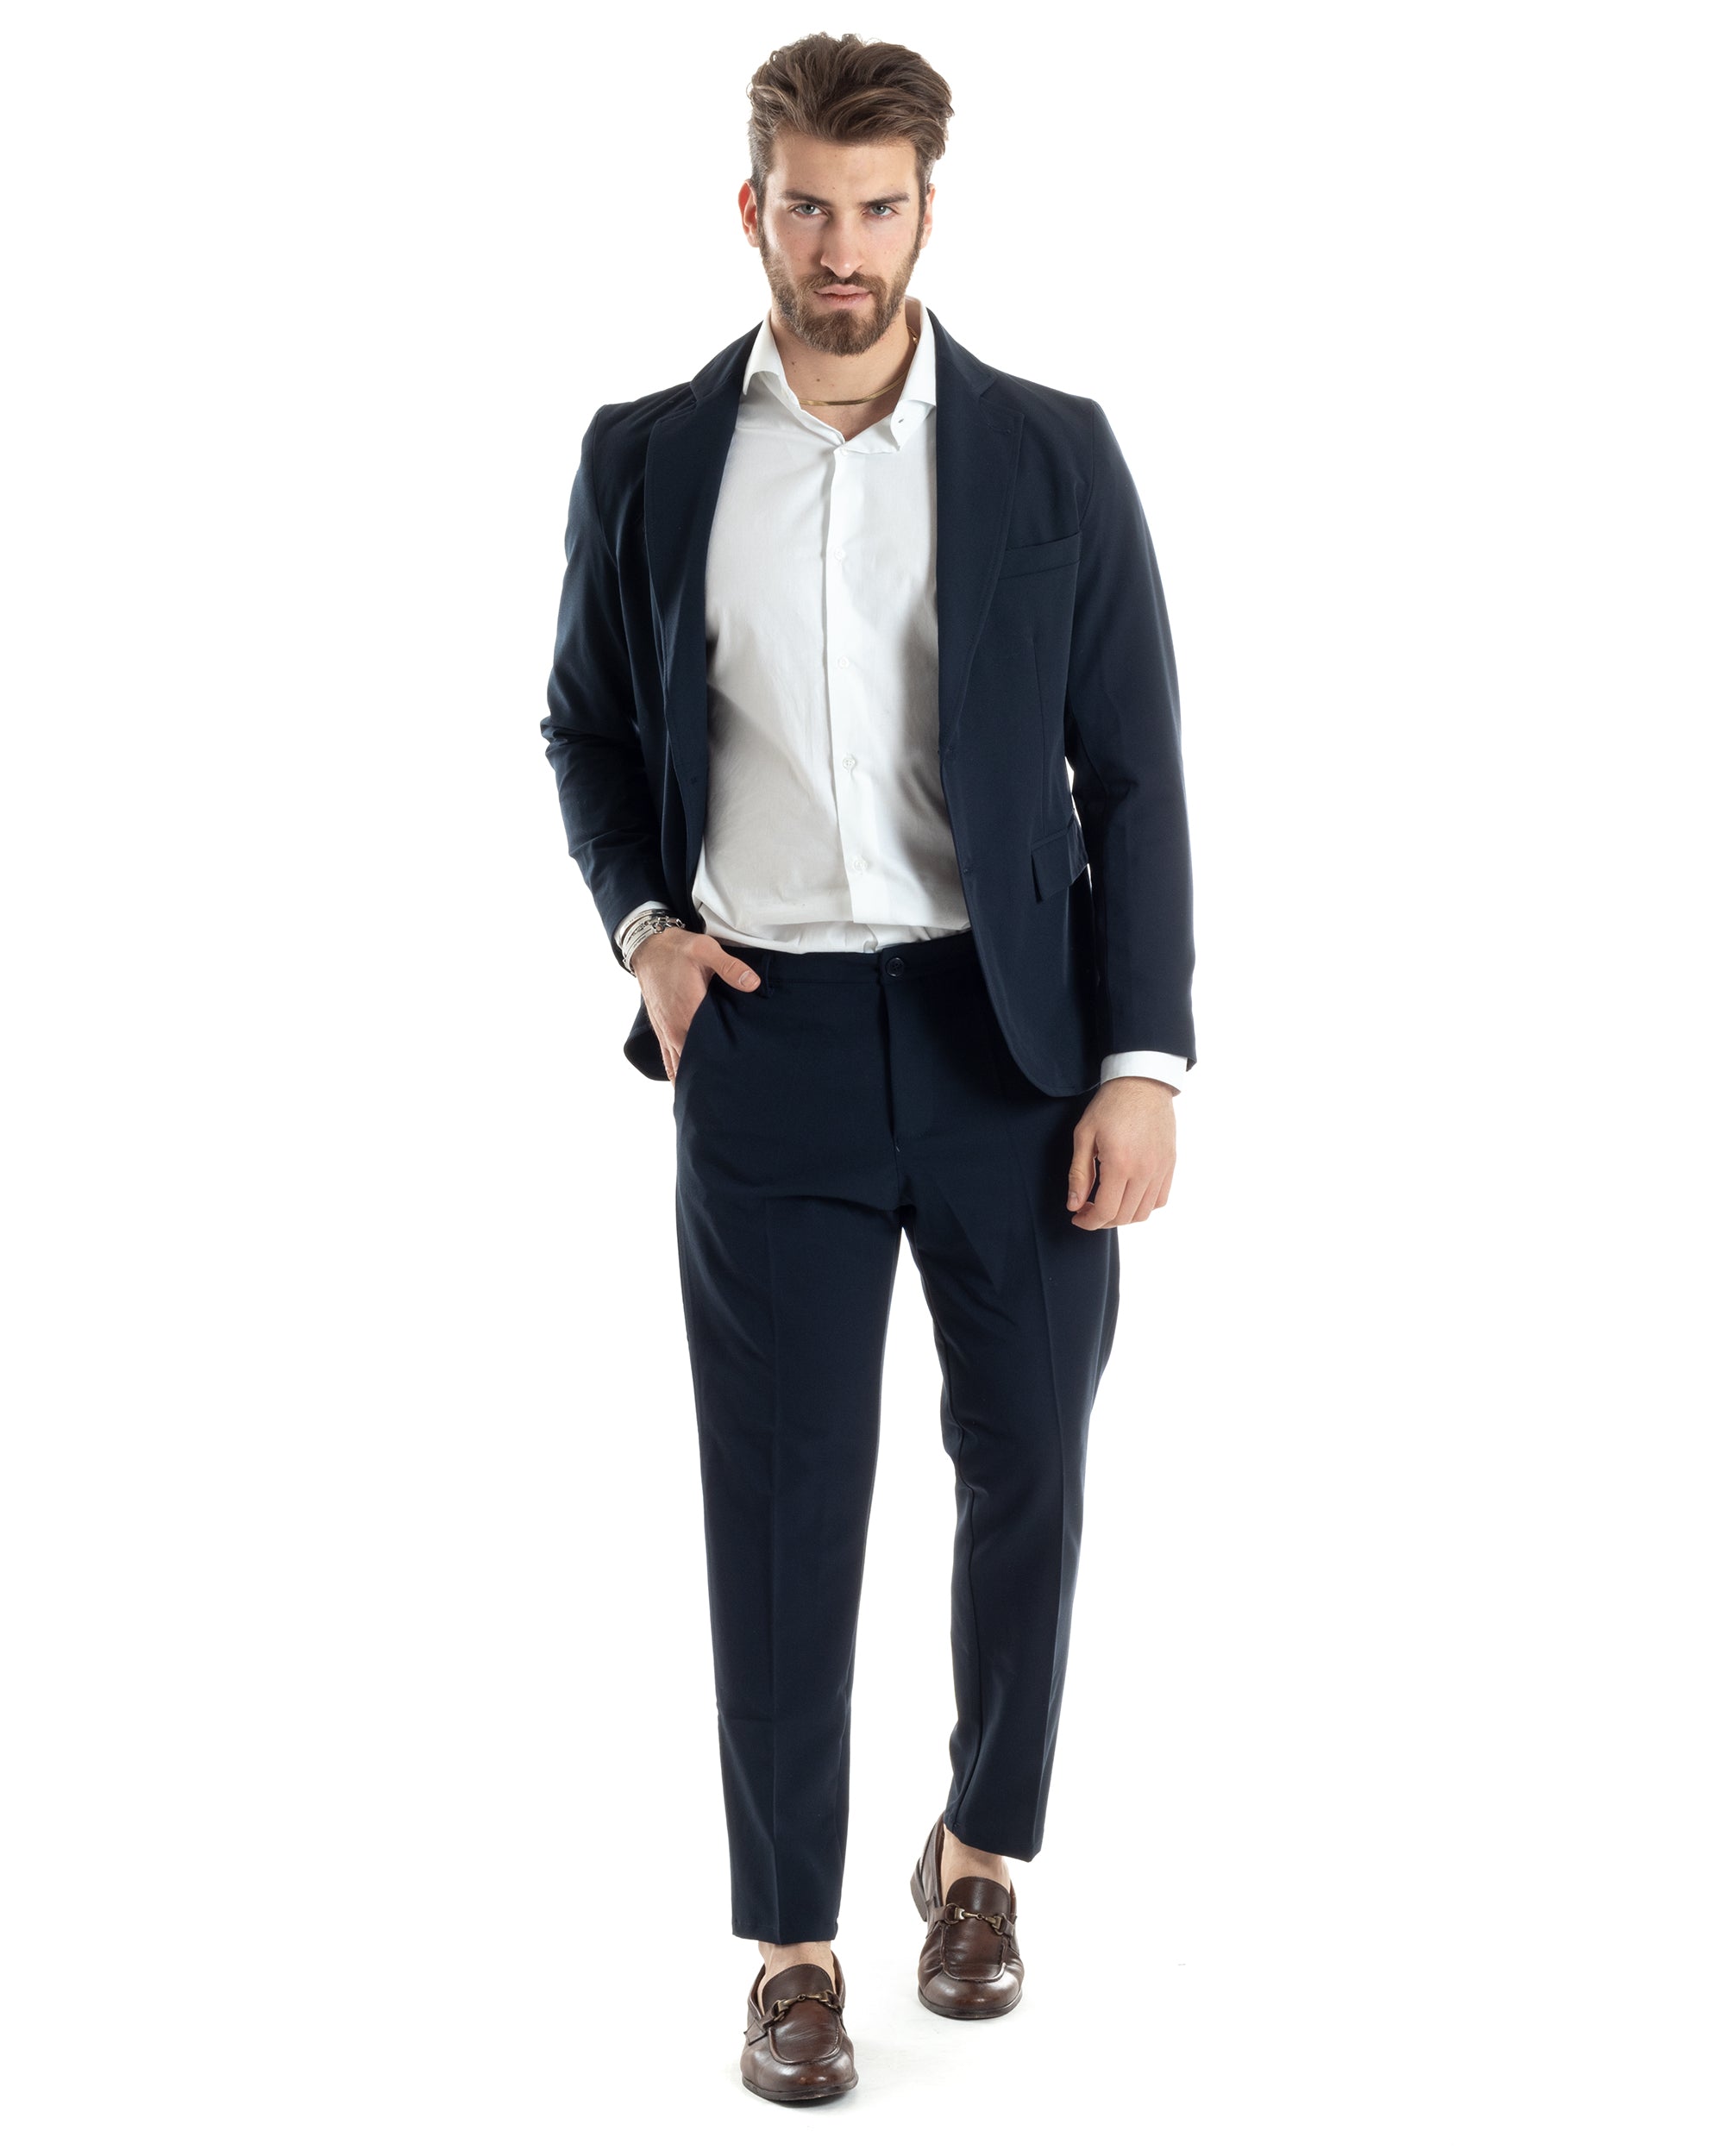 Abito Uomo Monopetto Vestito Completo Giacca Pantaloni Blu Tinta Unita Elegante Casual GIOSAL-AE1030A